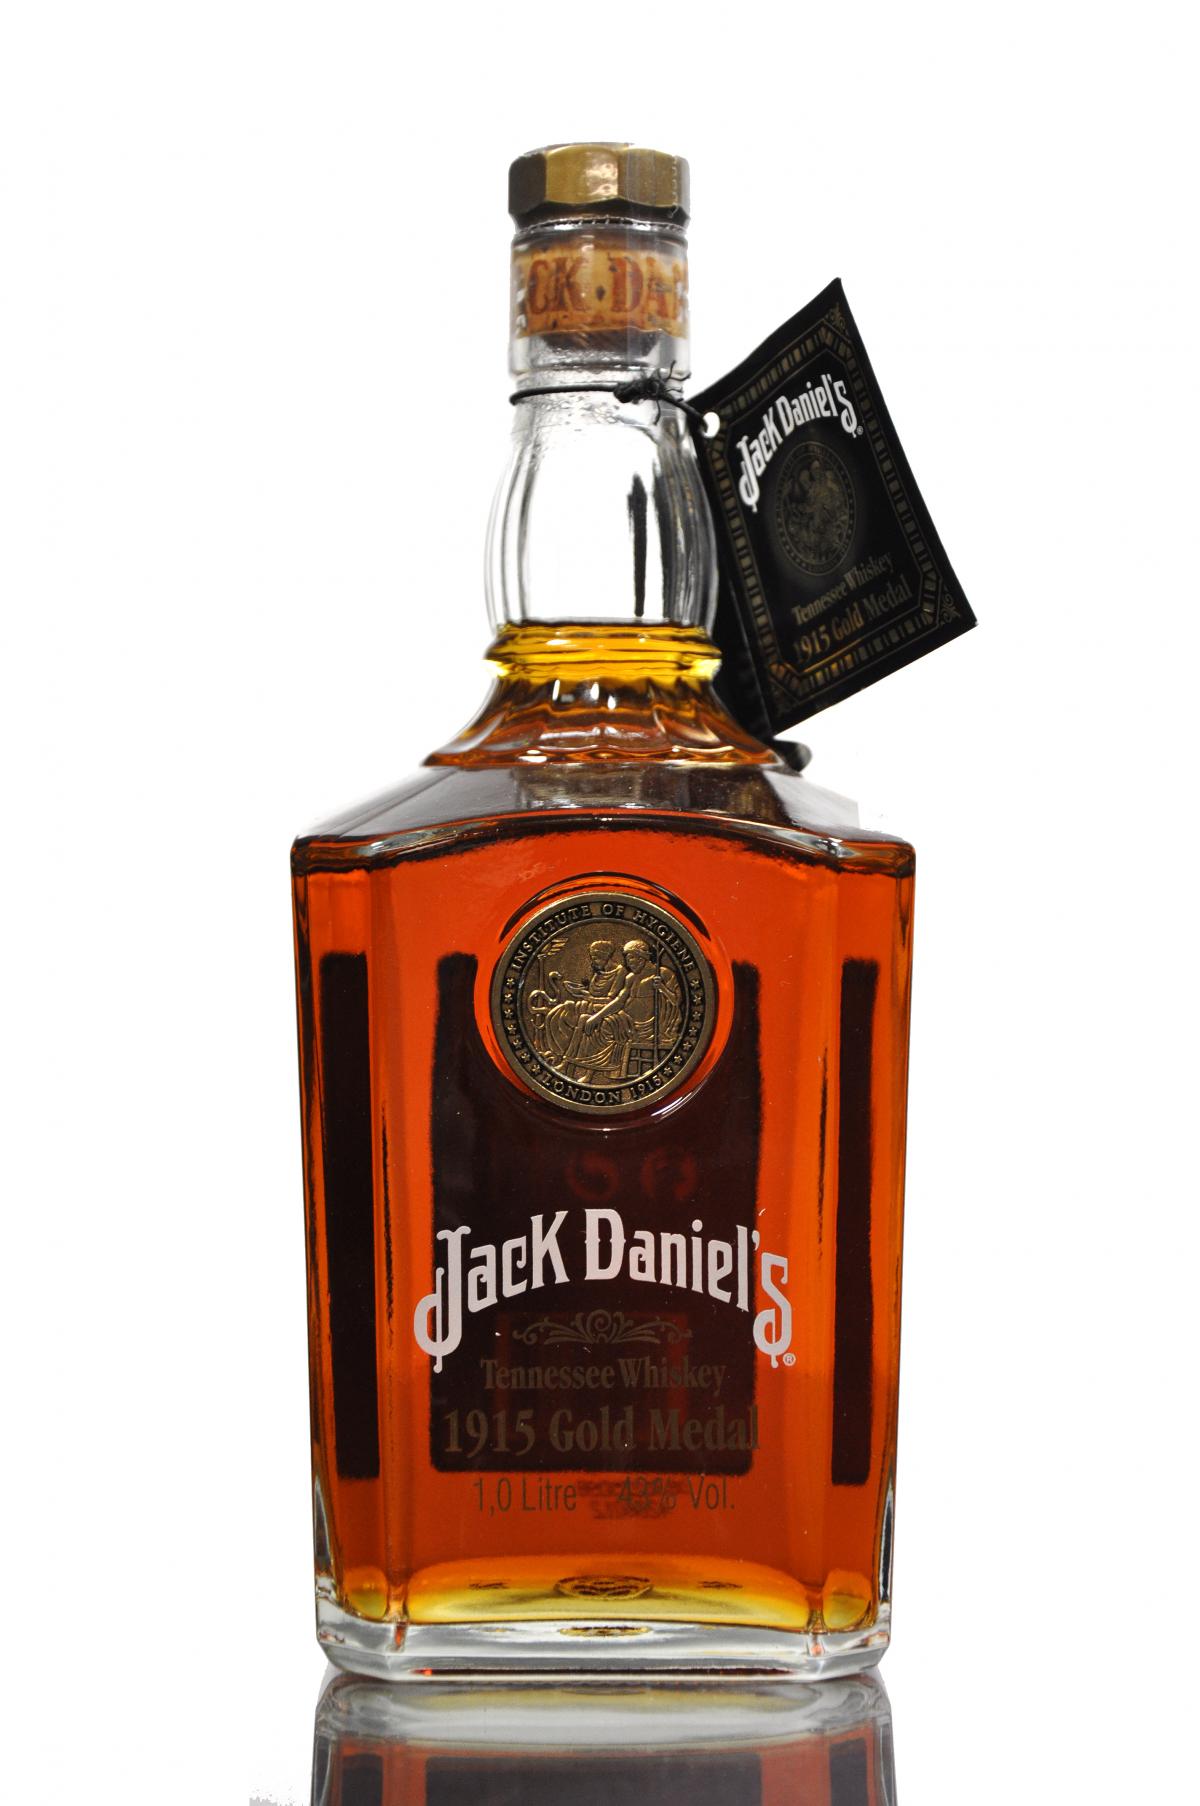 Jack Daniels 1915 Gold Medal - 1 Litre